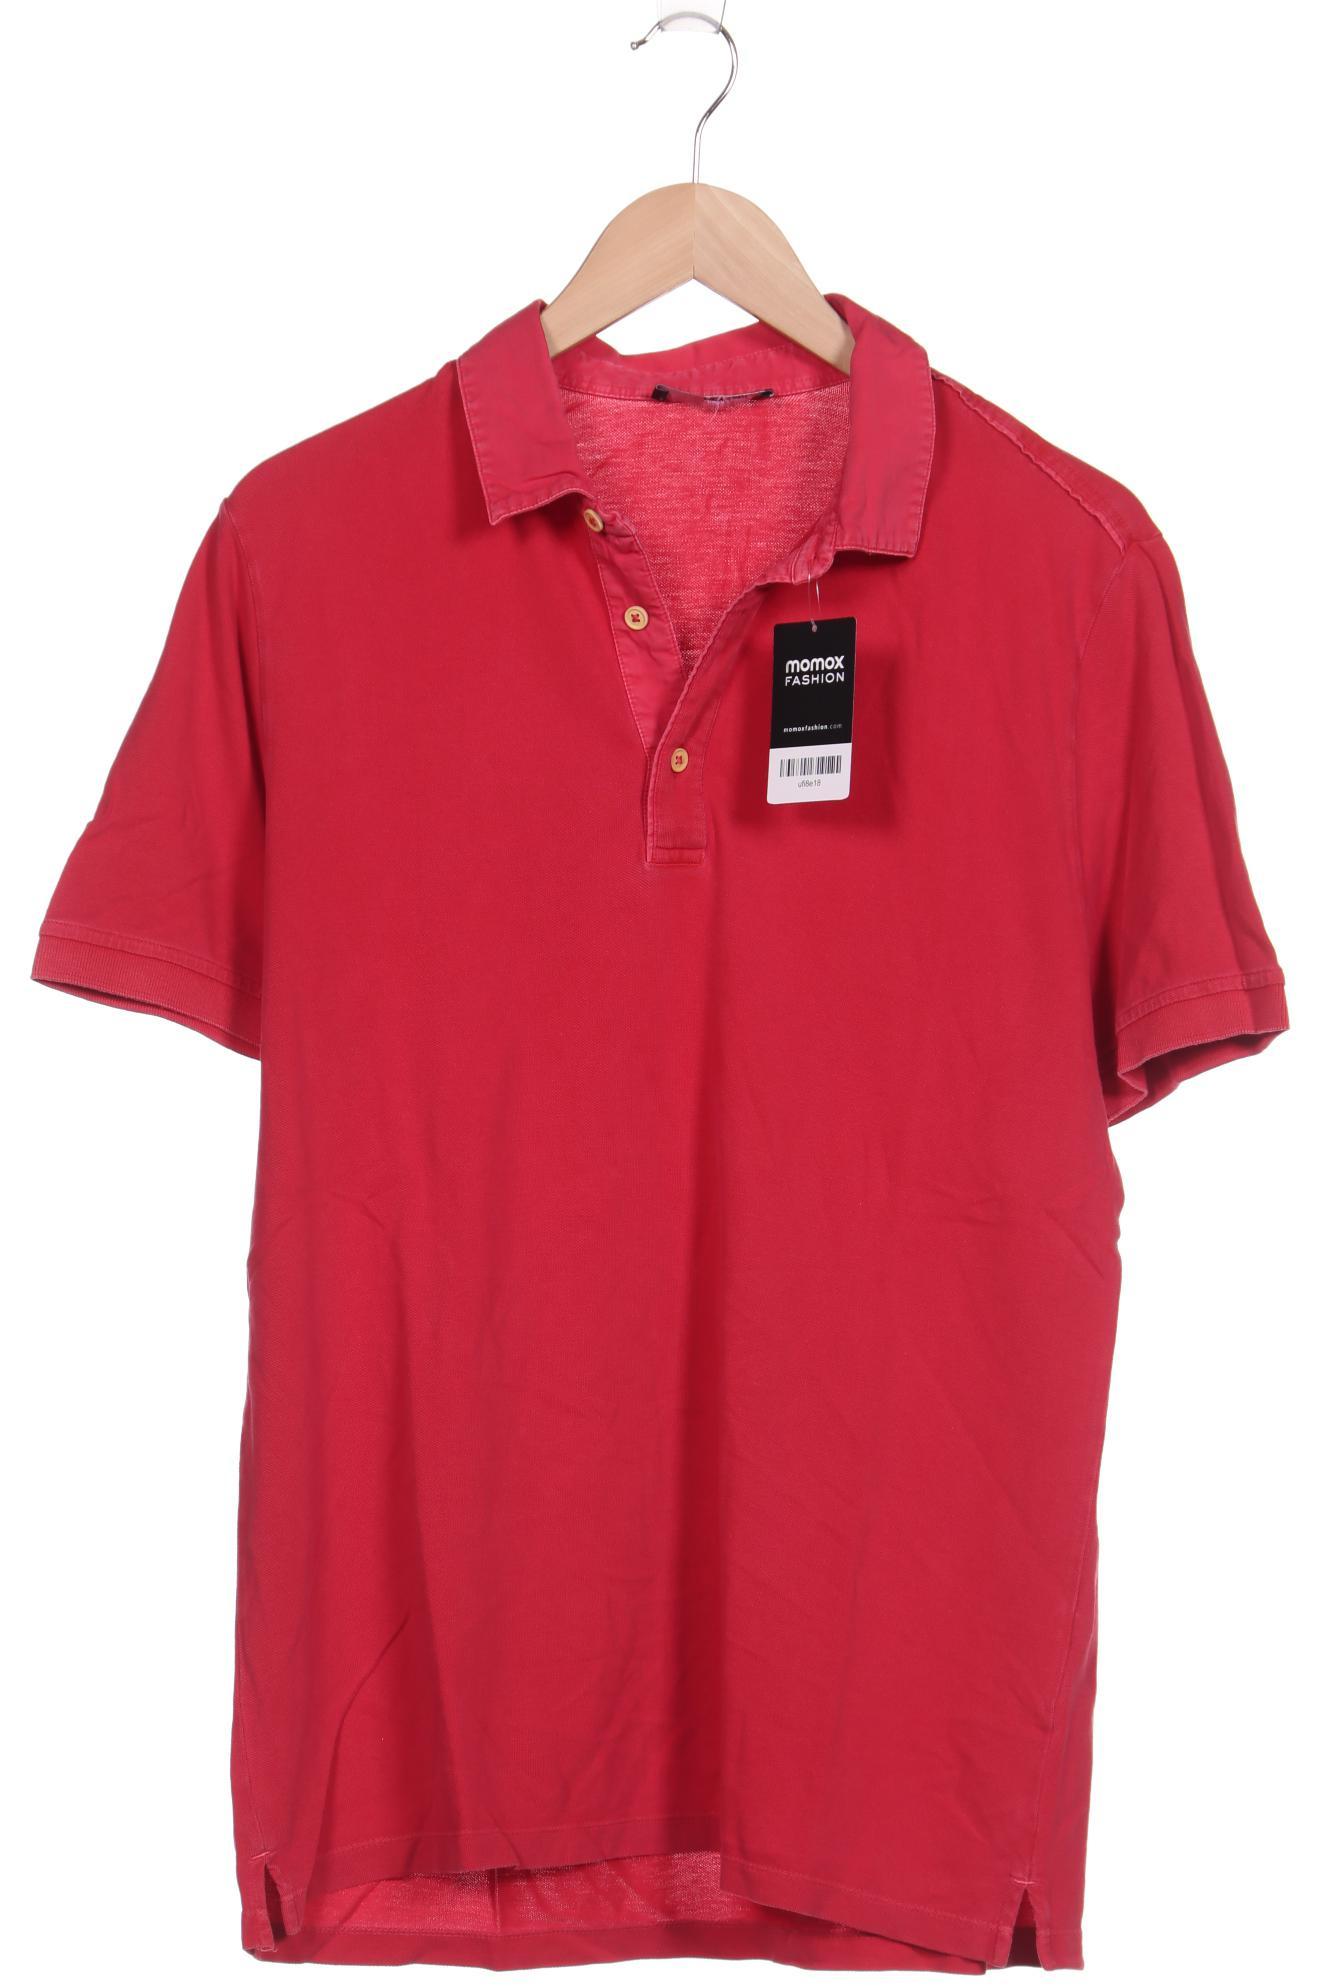 MeyEdlich Herren Poloshirt, rot, Gr. 50 von MeyEdlich